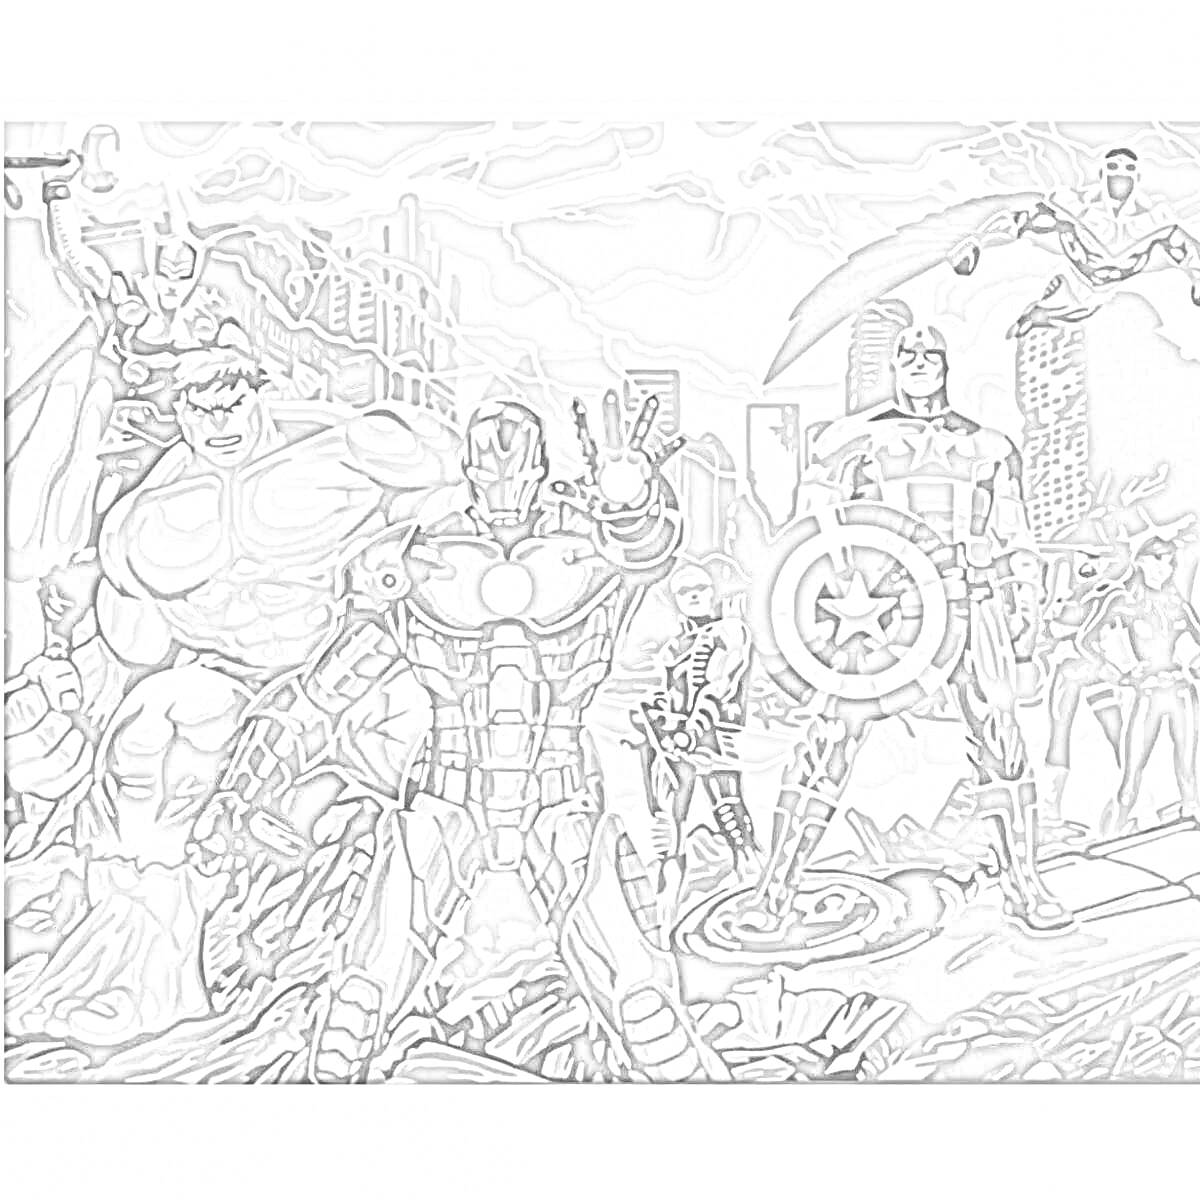 Герои Марвел в бою на фоне разрушенного города (Железный человек, Халк, Тор, Капитан Америка, Черная вдова, Сокол)